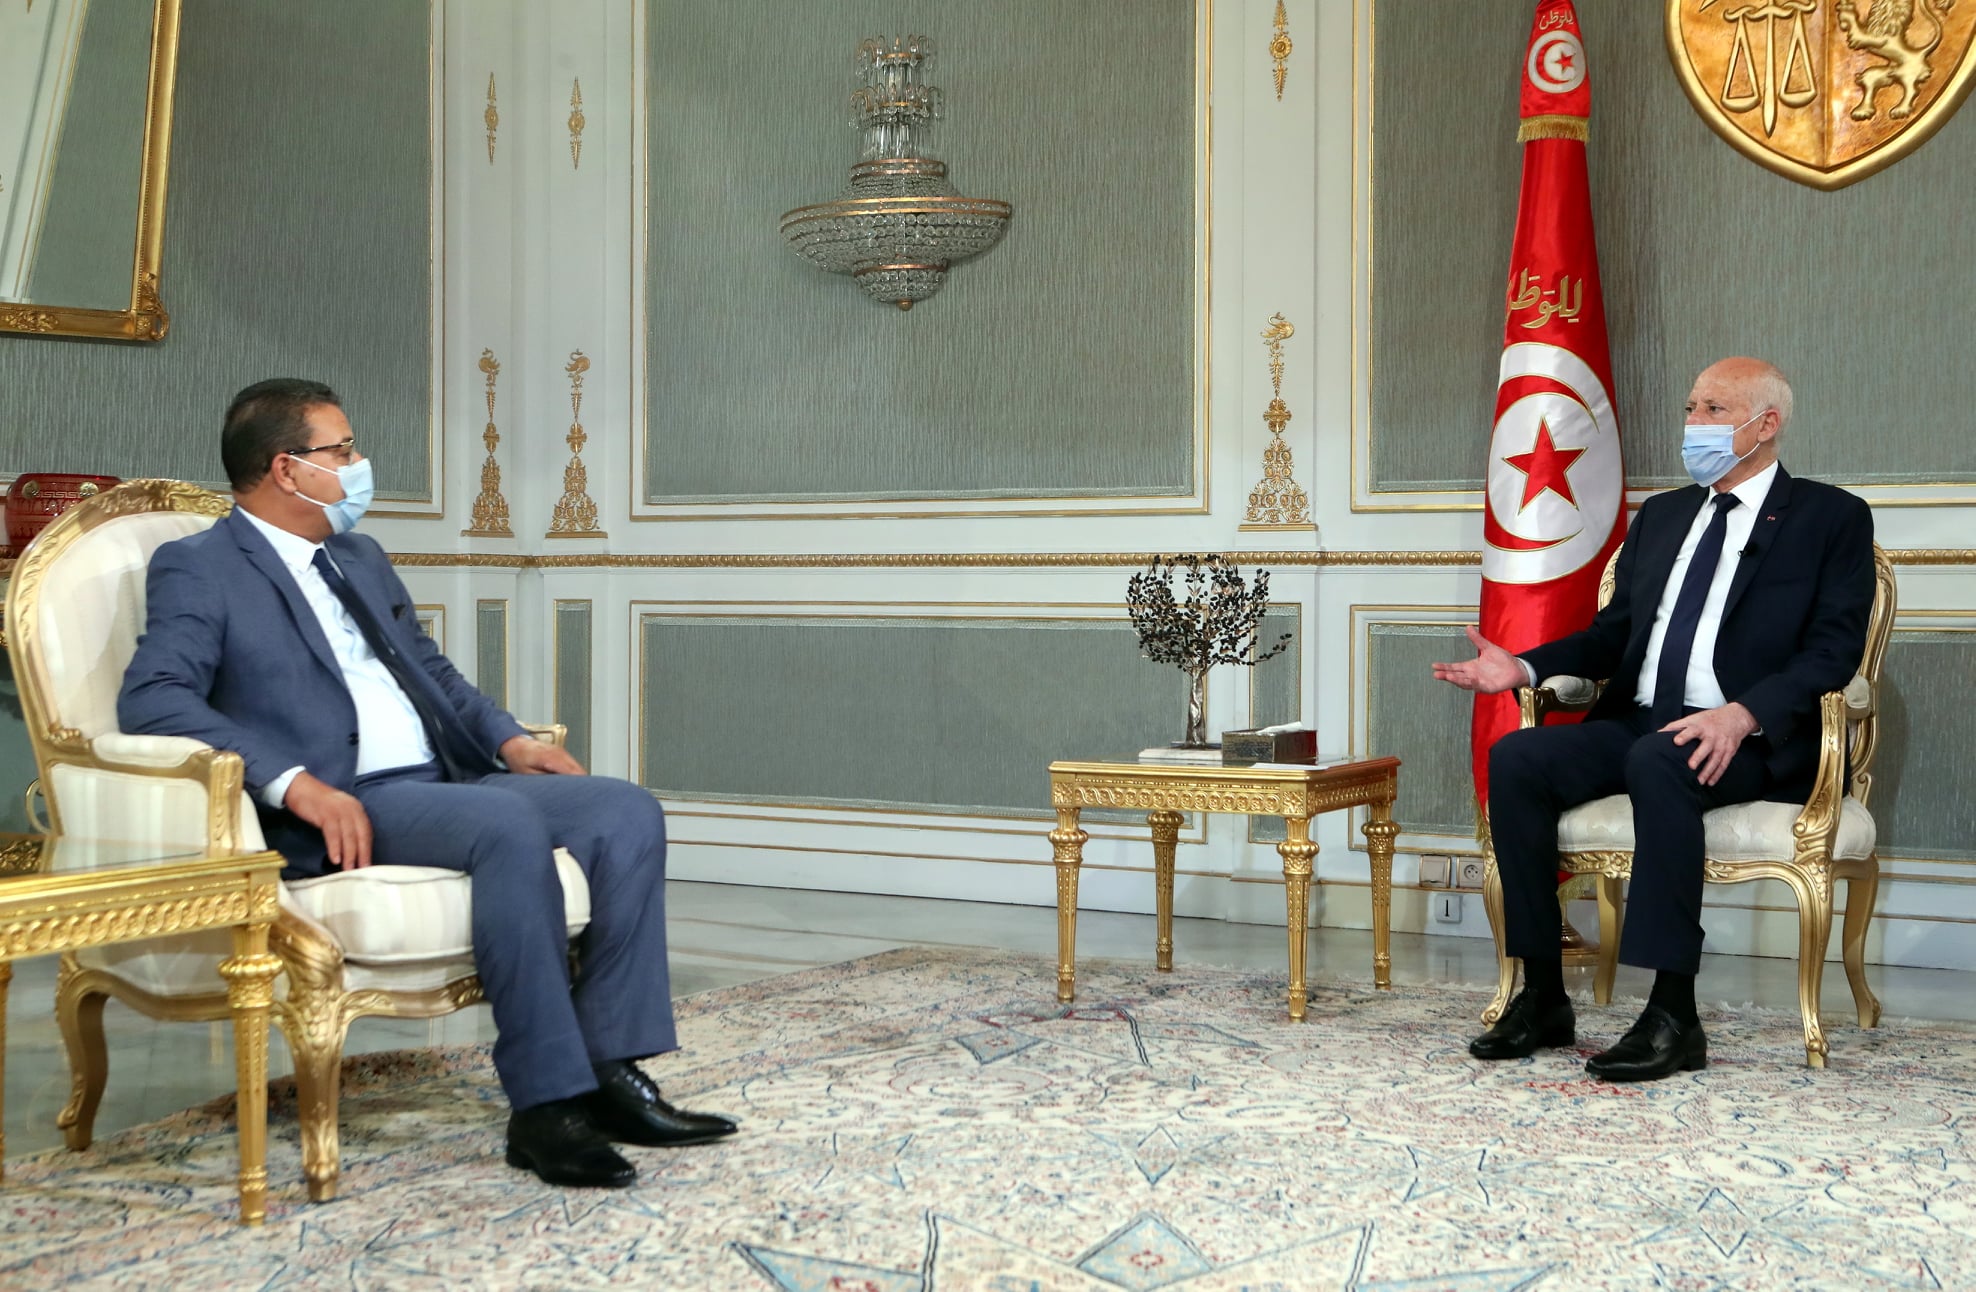 Tunisie-Kais Saied: Je n’ai aucun problème avec personne mais plutôt avec le système actuel